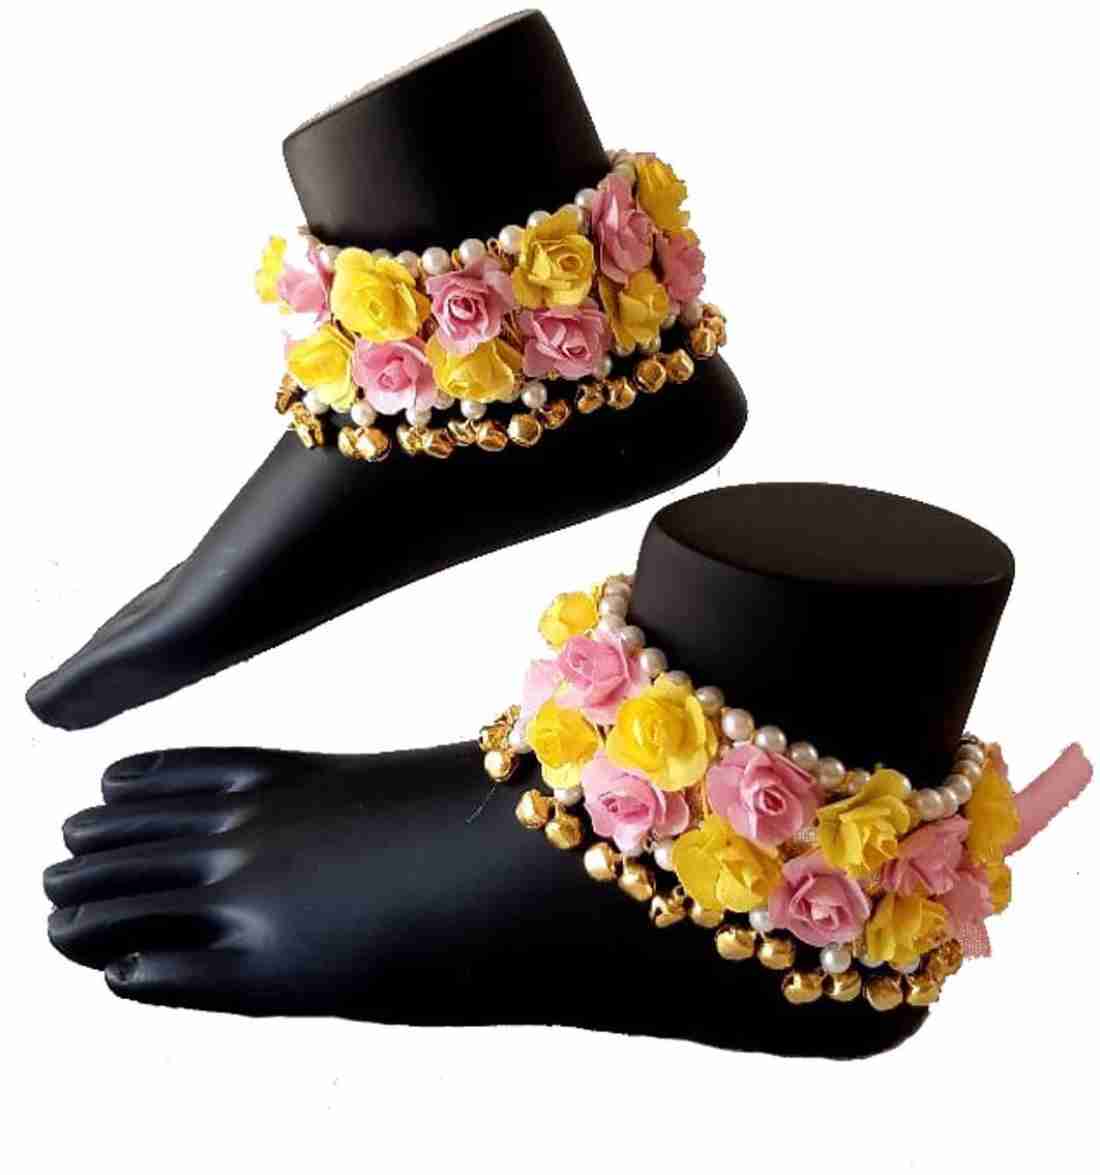 Flower jewellery anklets set / Payal set